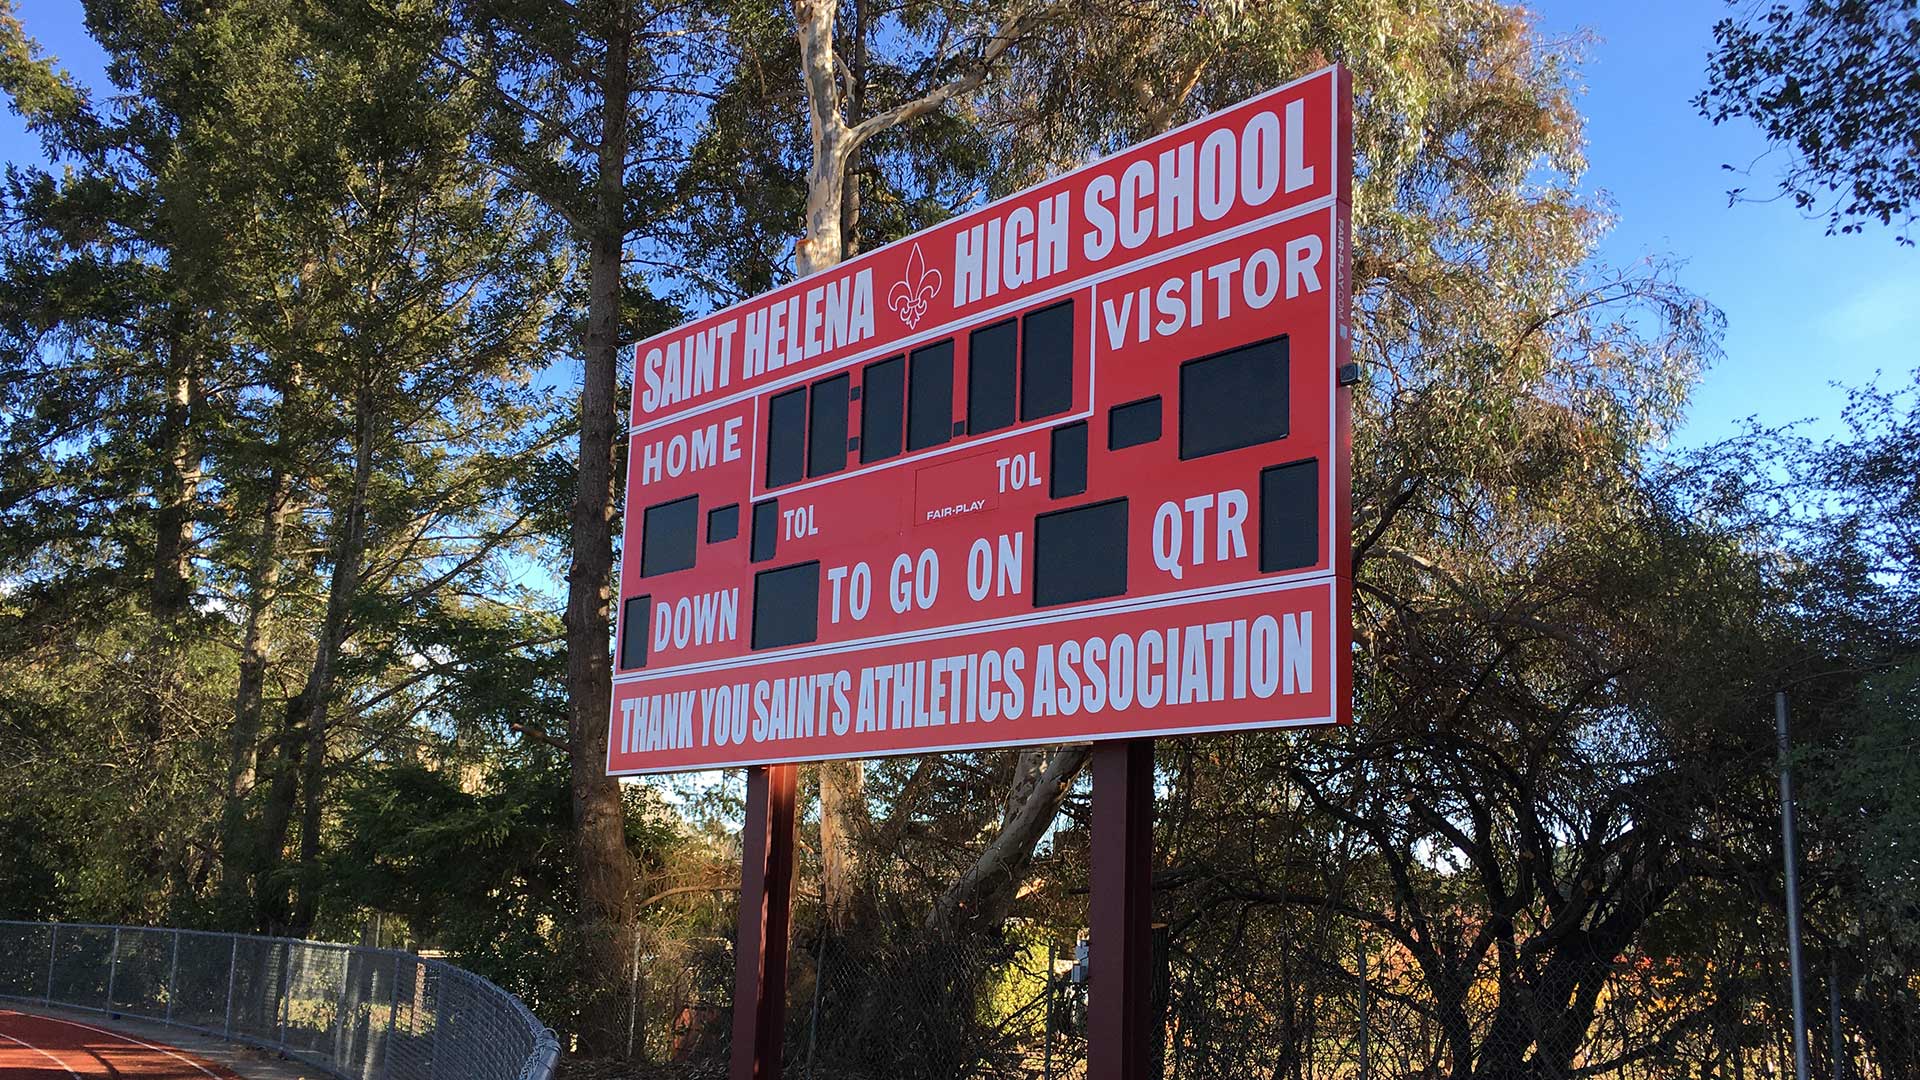 Football scoreboard outside high school playing field.